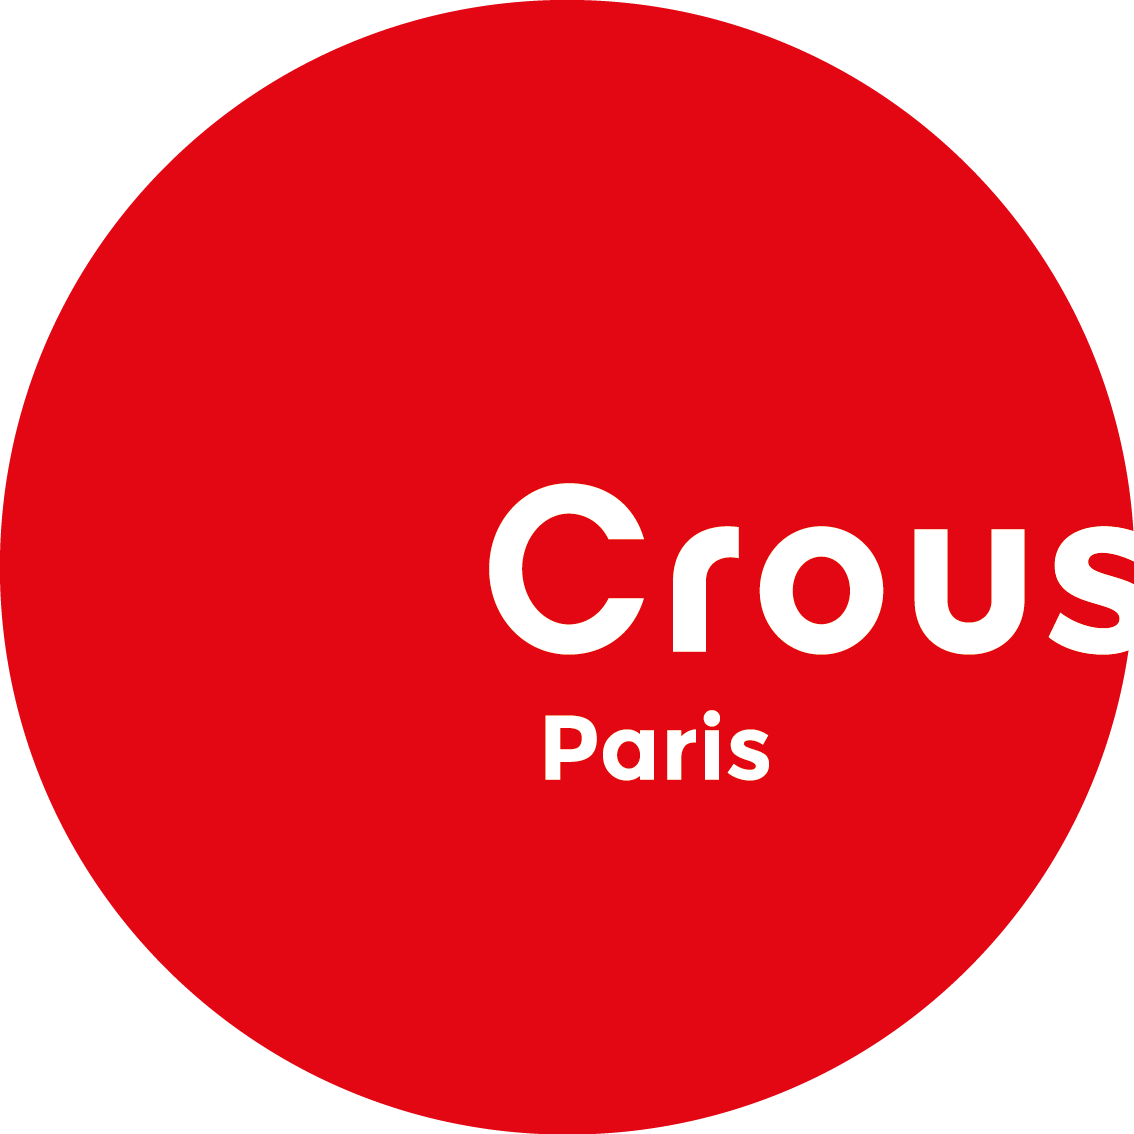 Billets réduits, événements gratuits, soutien à vos projets, retrouvez toute l'activité du service culturel du CROUS de Paris!